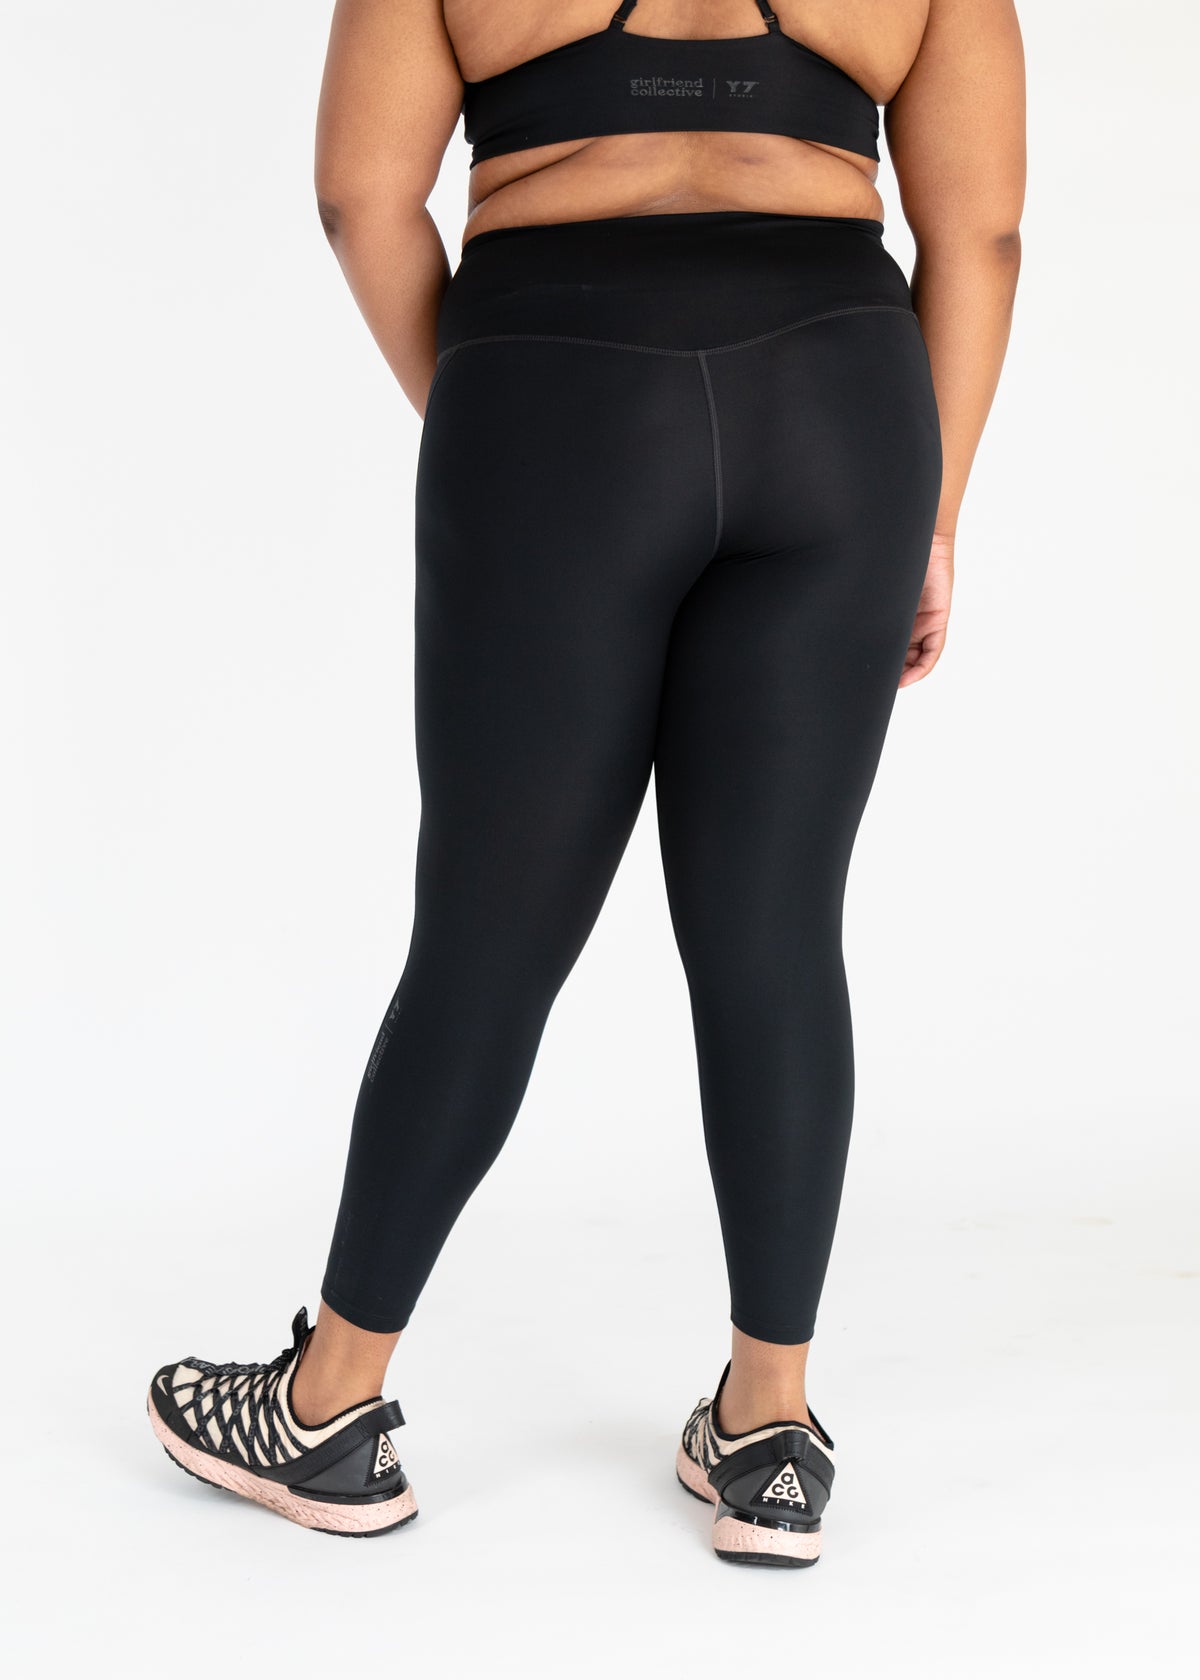 Flirtitude Womens workout crop Black Leggings size XL - beyond